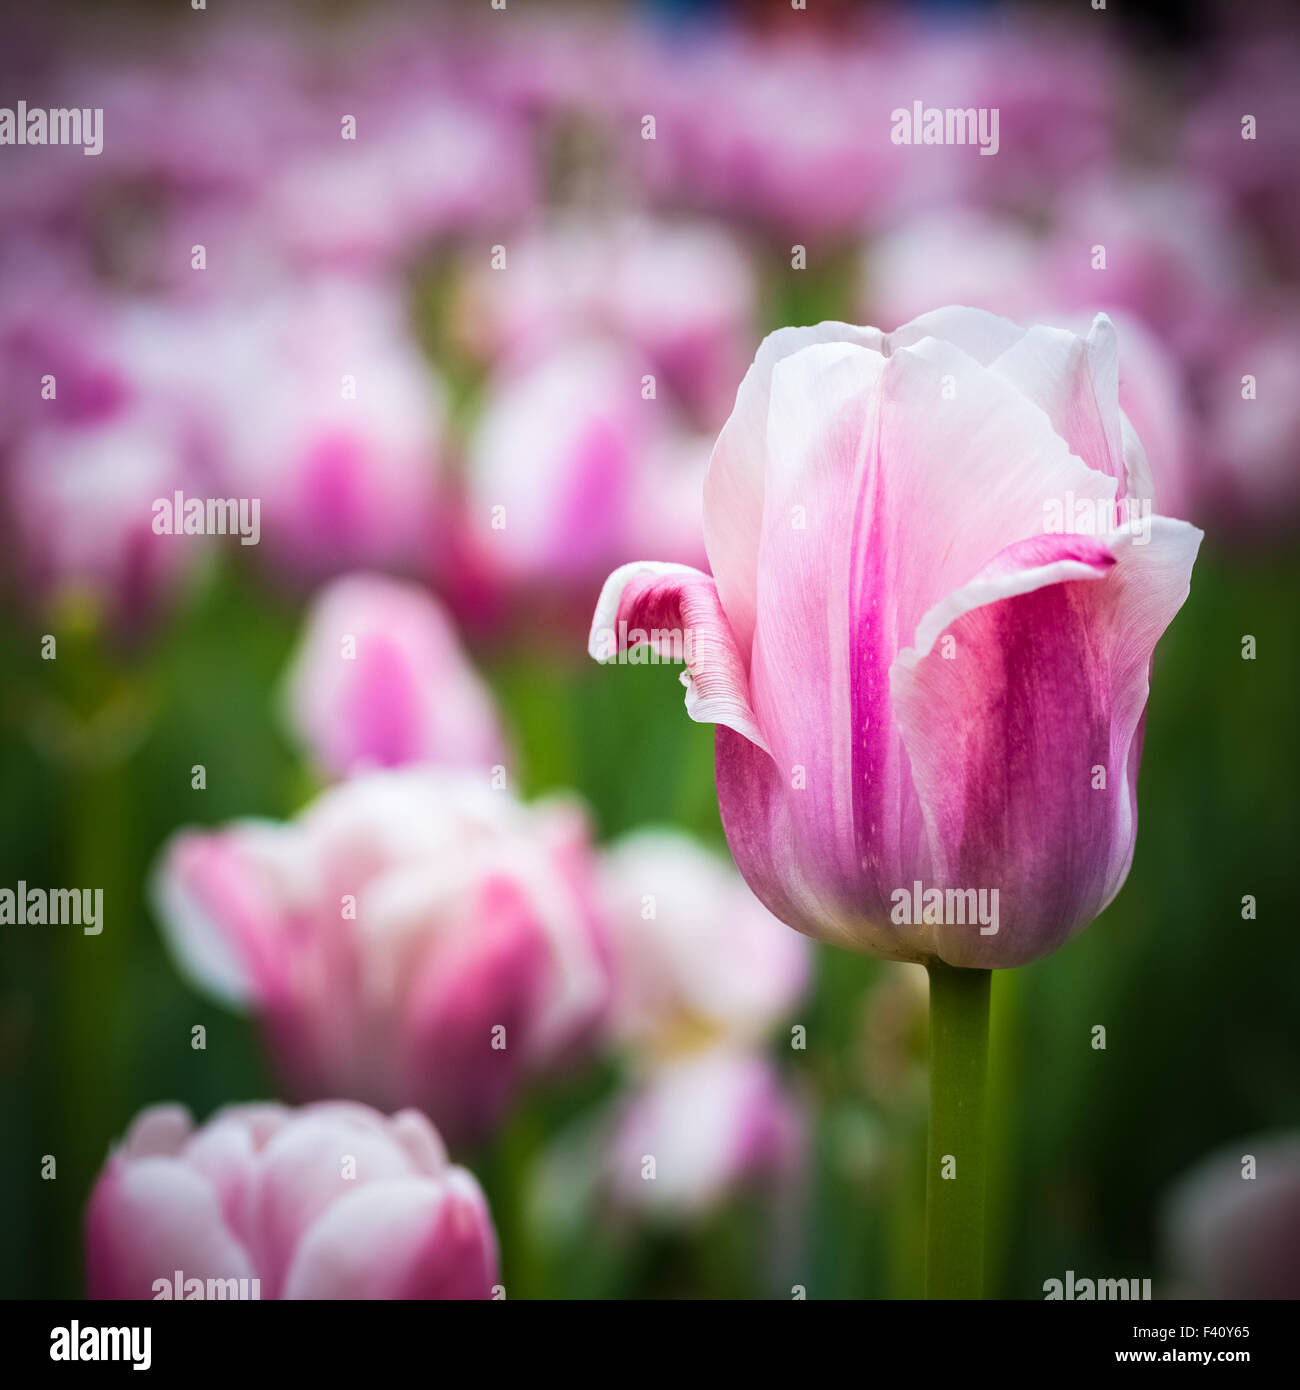 pink tulips closeup Stock Photo